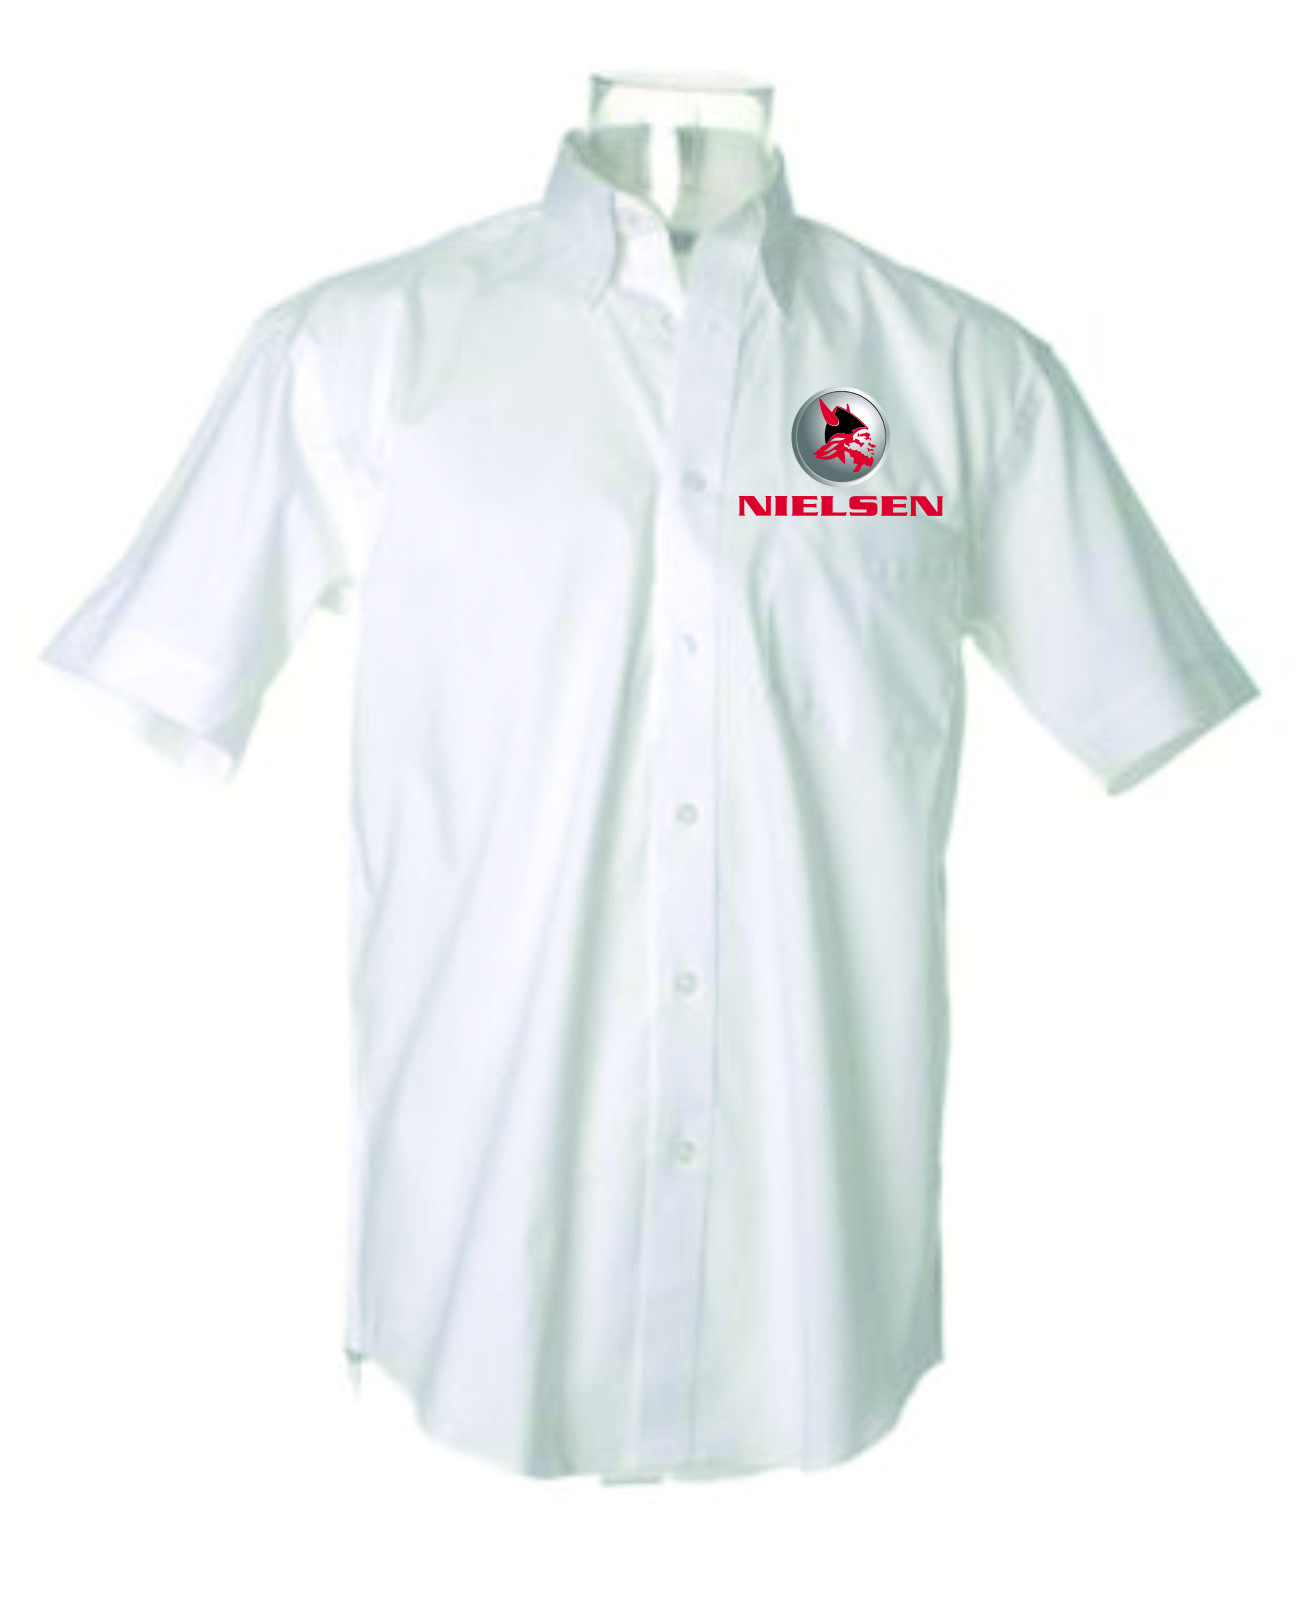 Nielsen Chem KK109 White s/s shirt 15.5